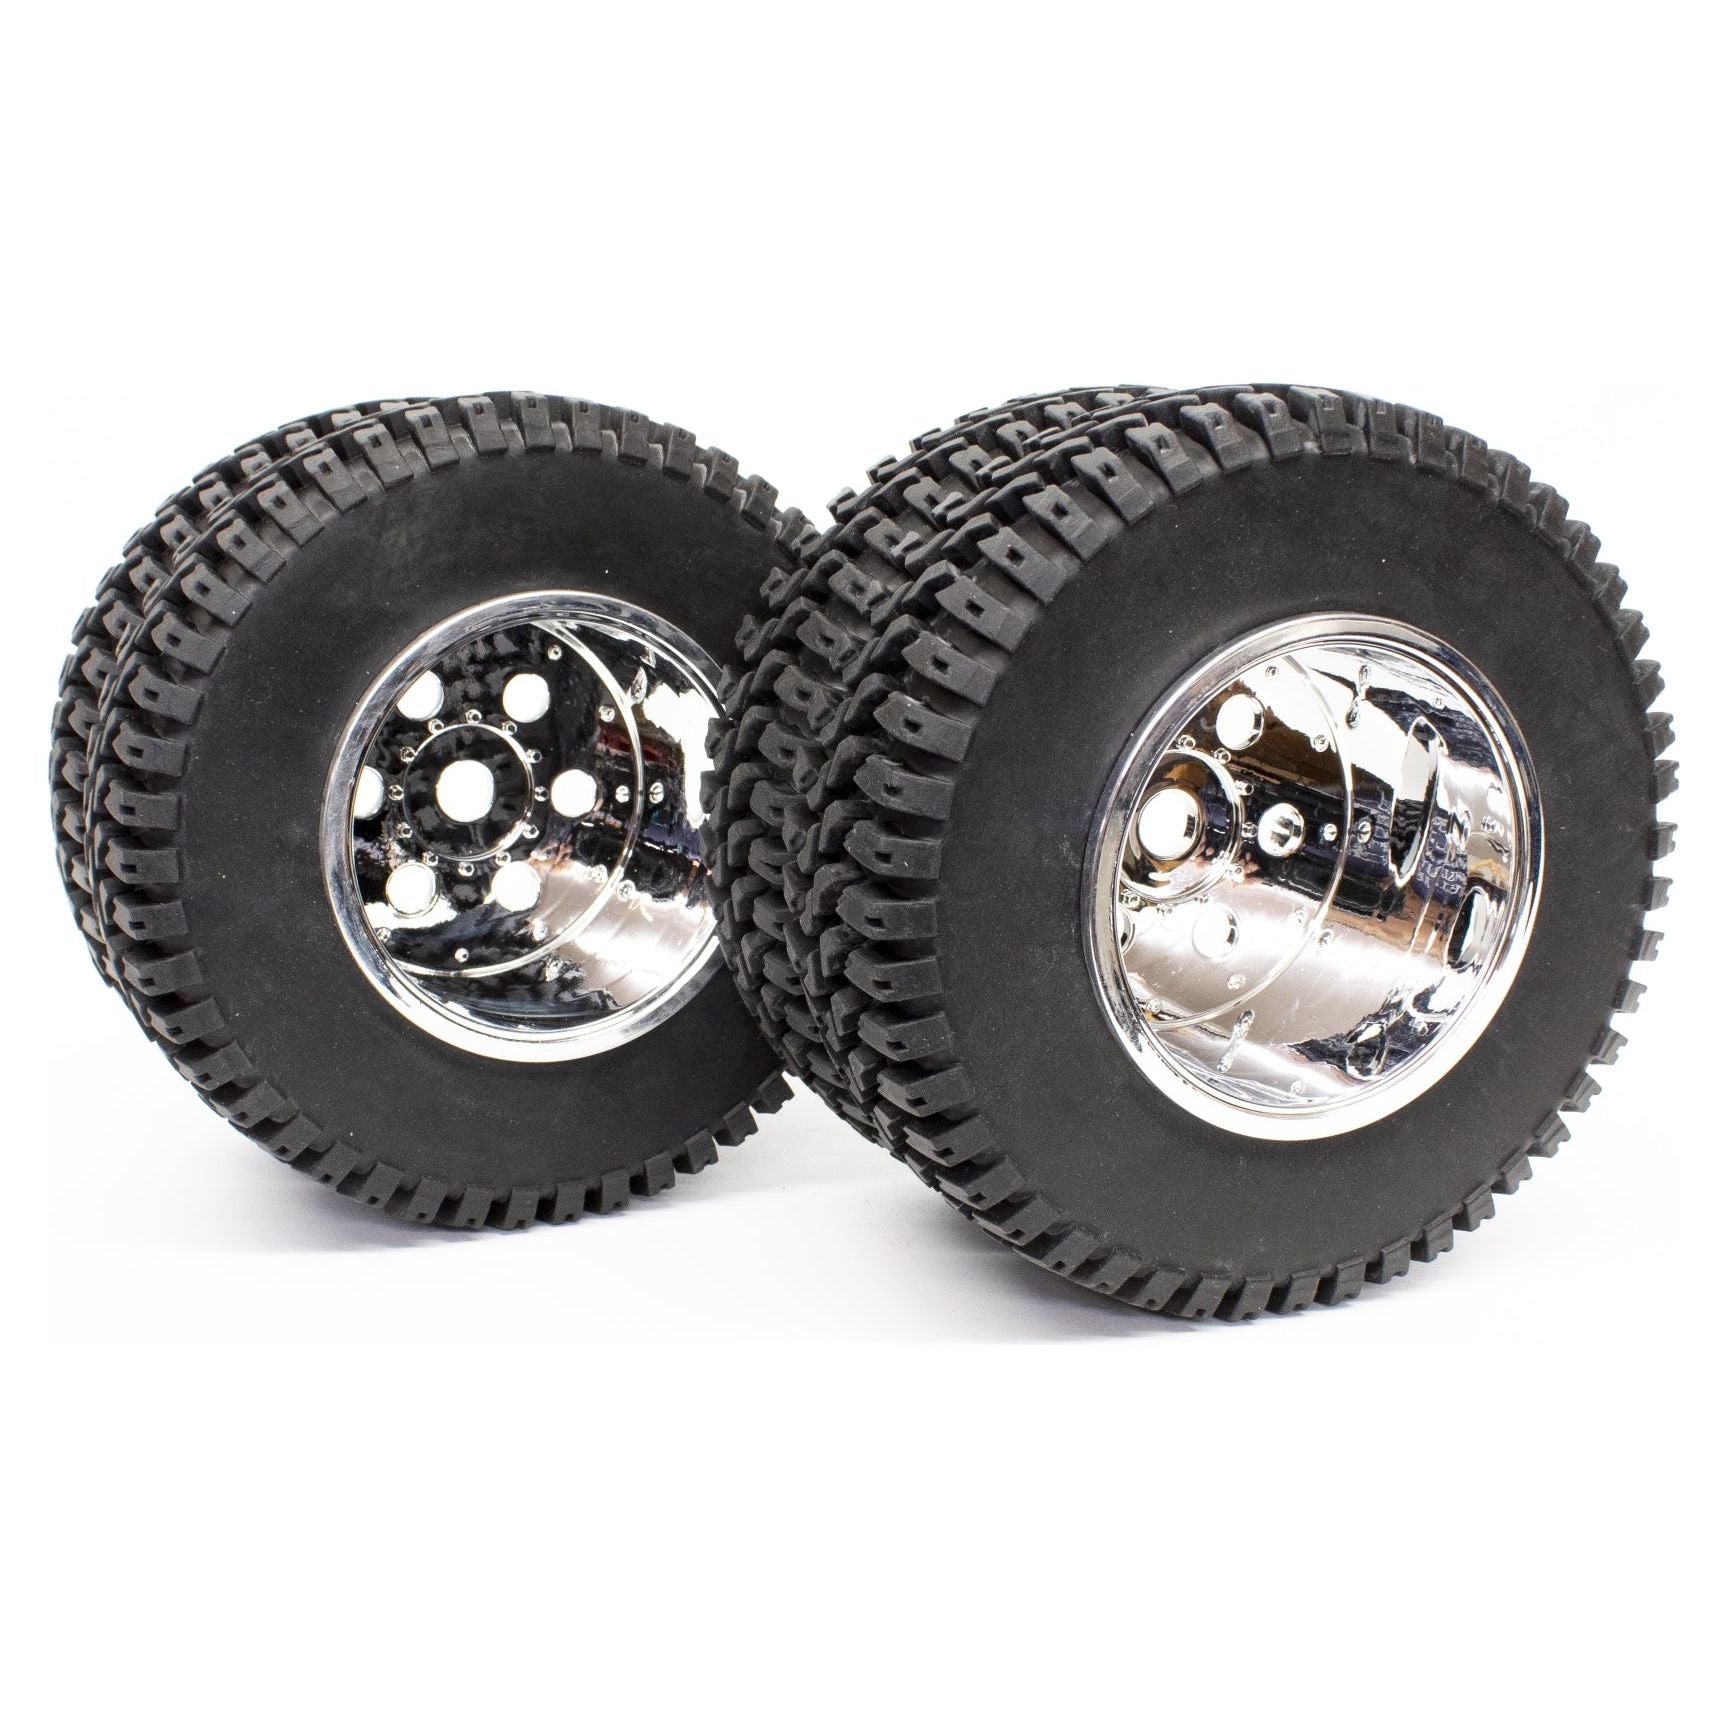 IMEX 3.2 Dually Tires & Diamond Rims (1 Pair)